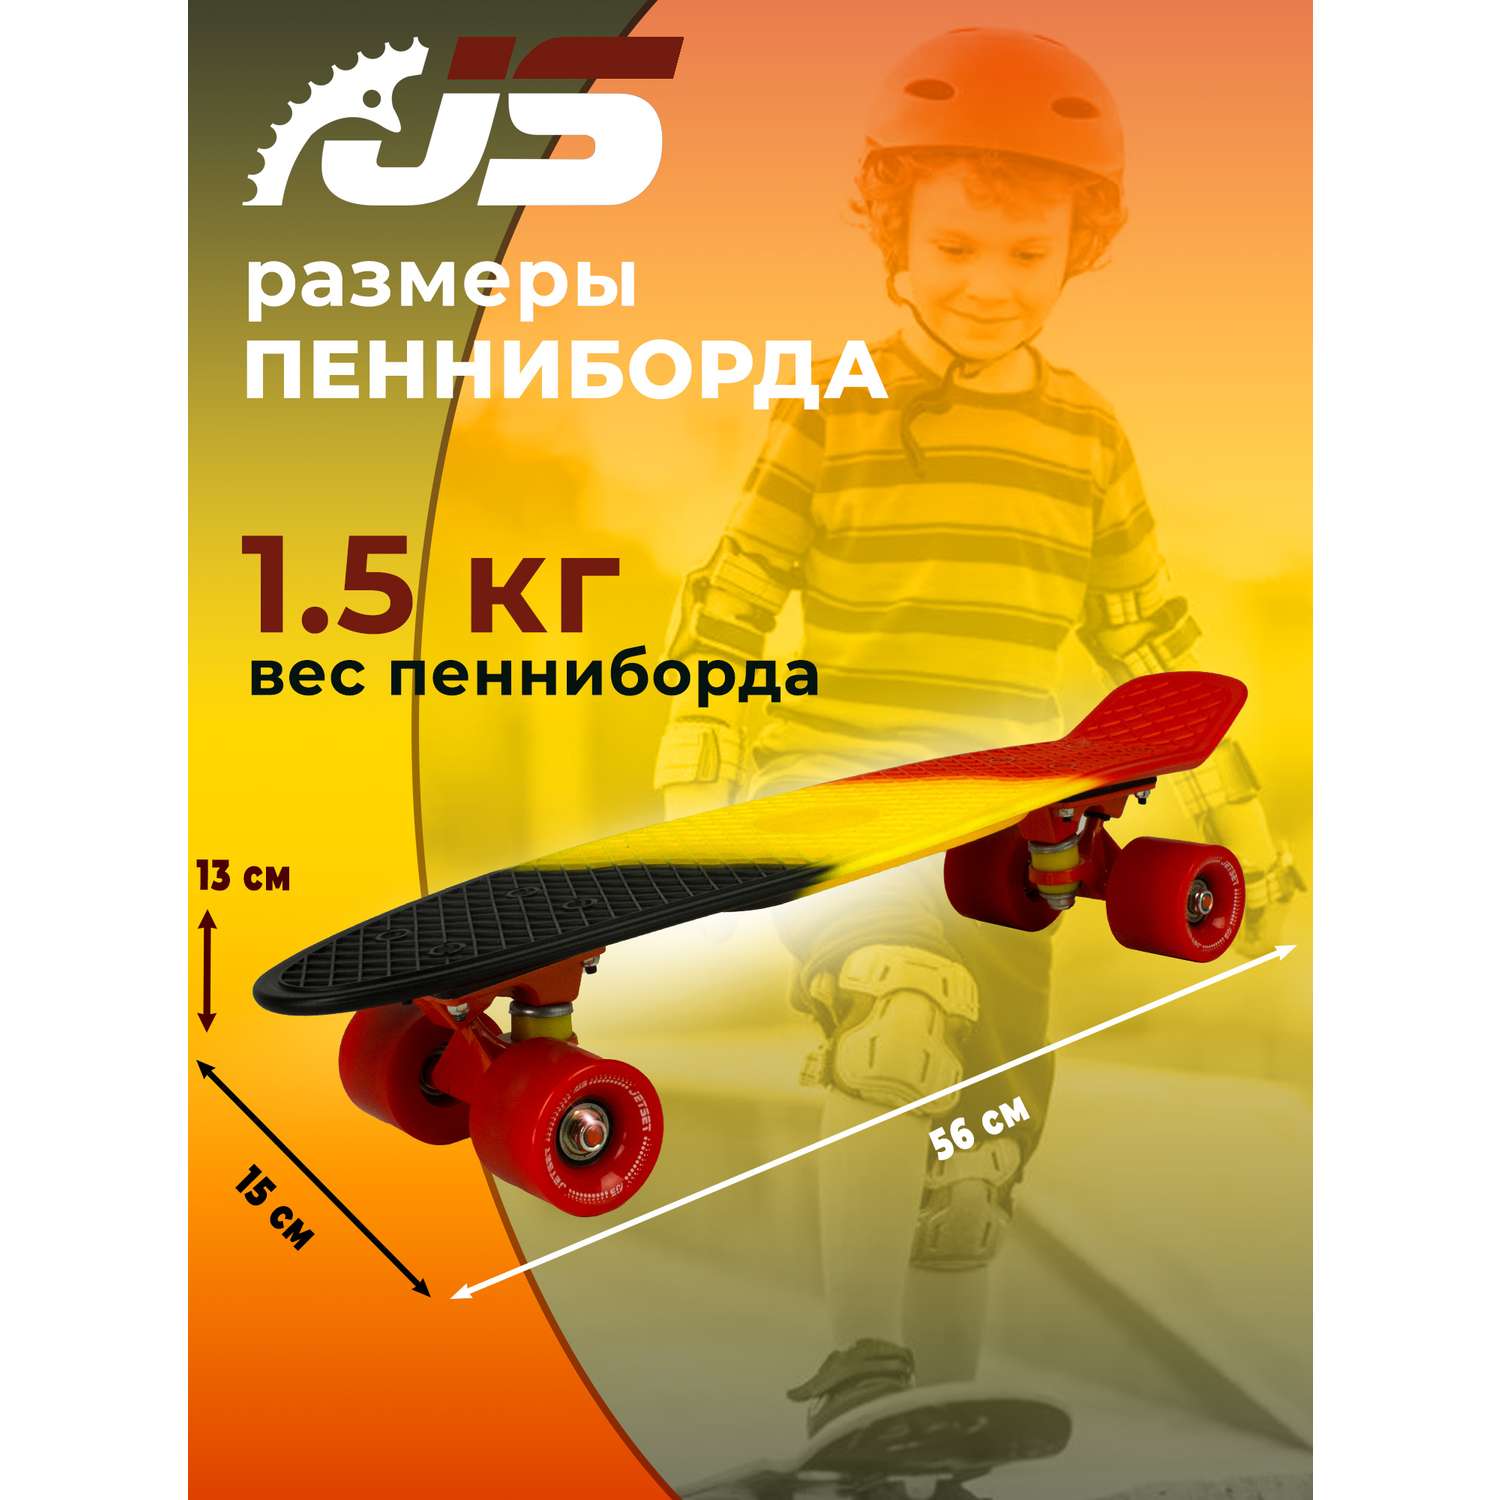 Скейтборд JETSET детский черный желтый красный - фото 2